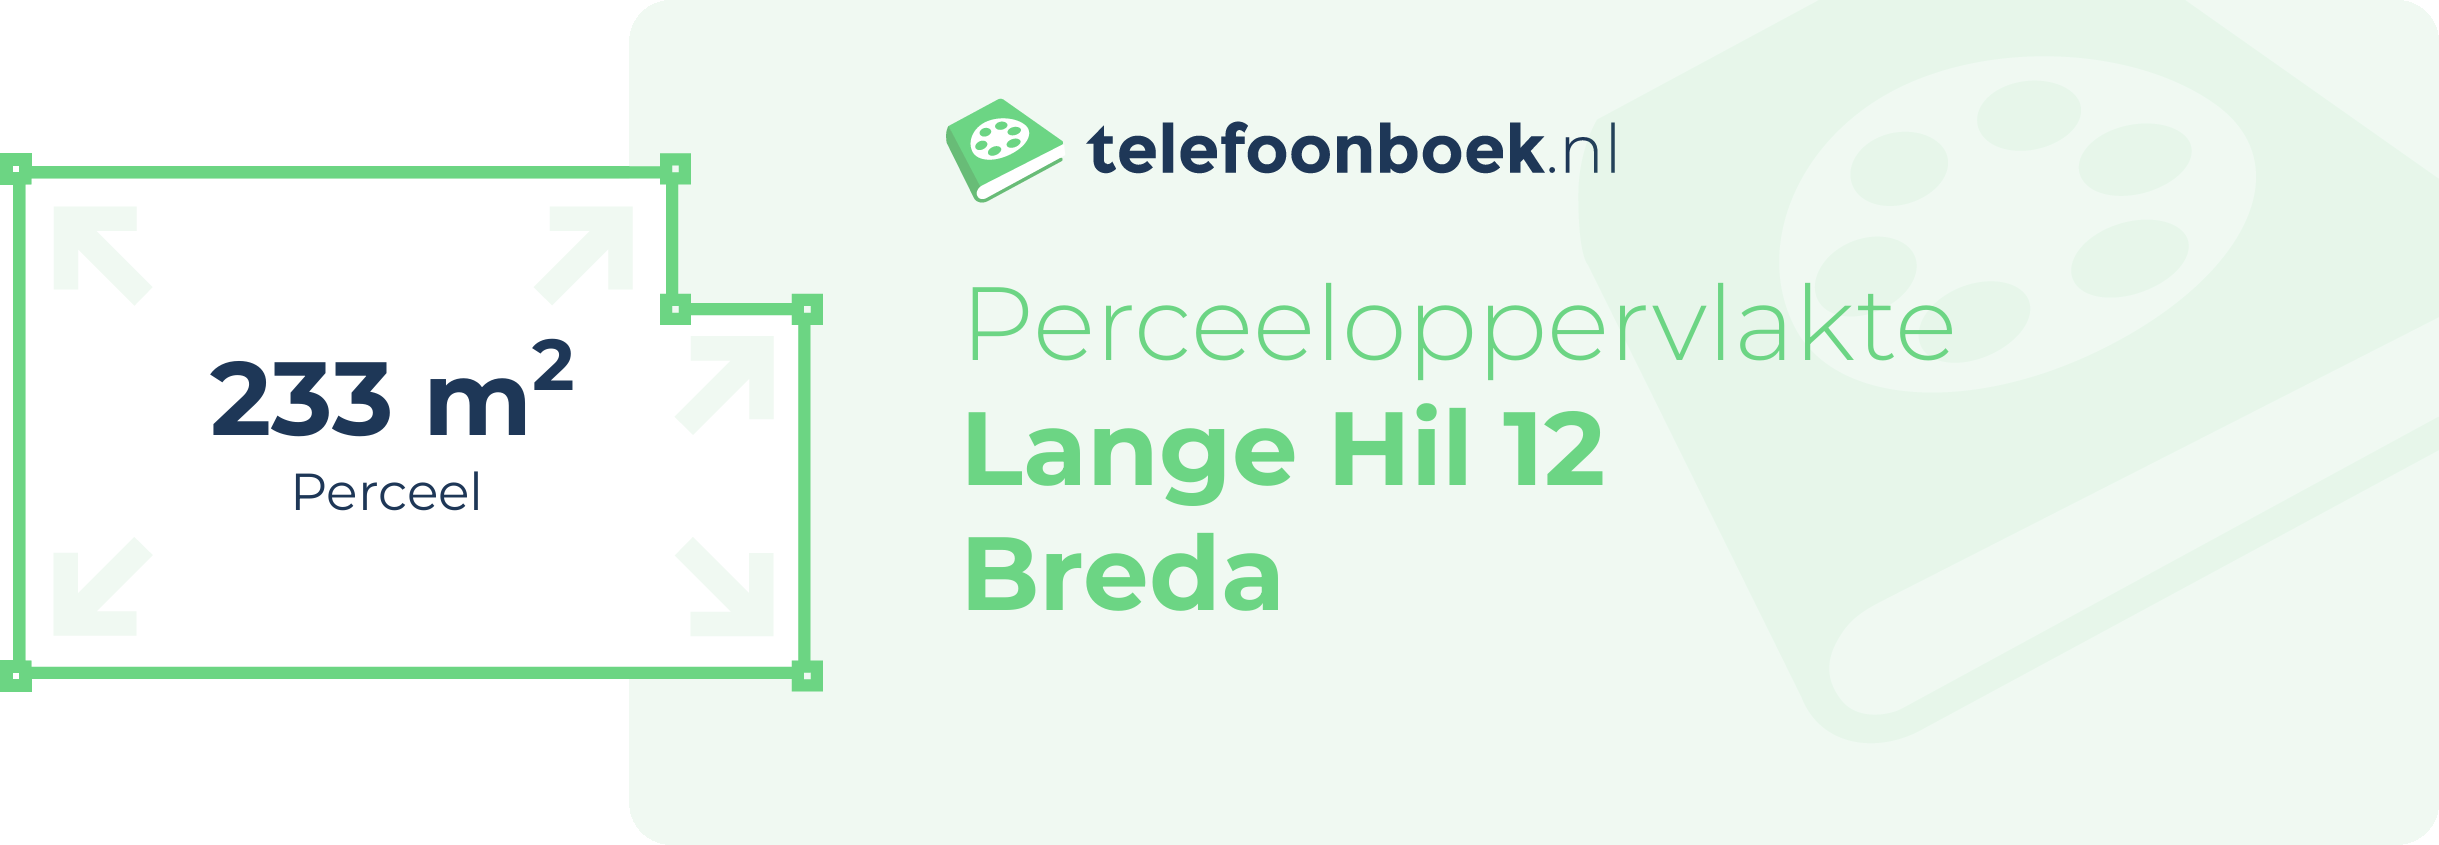 Perceeloppervlakte Lange Hil 12 Breda